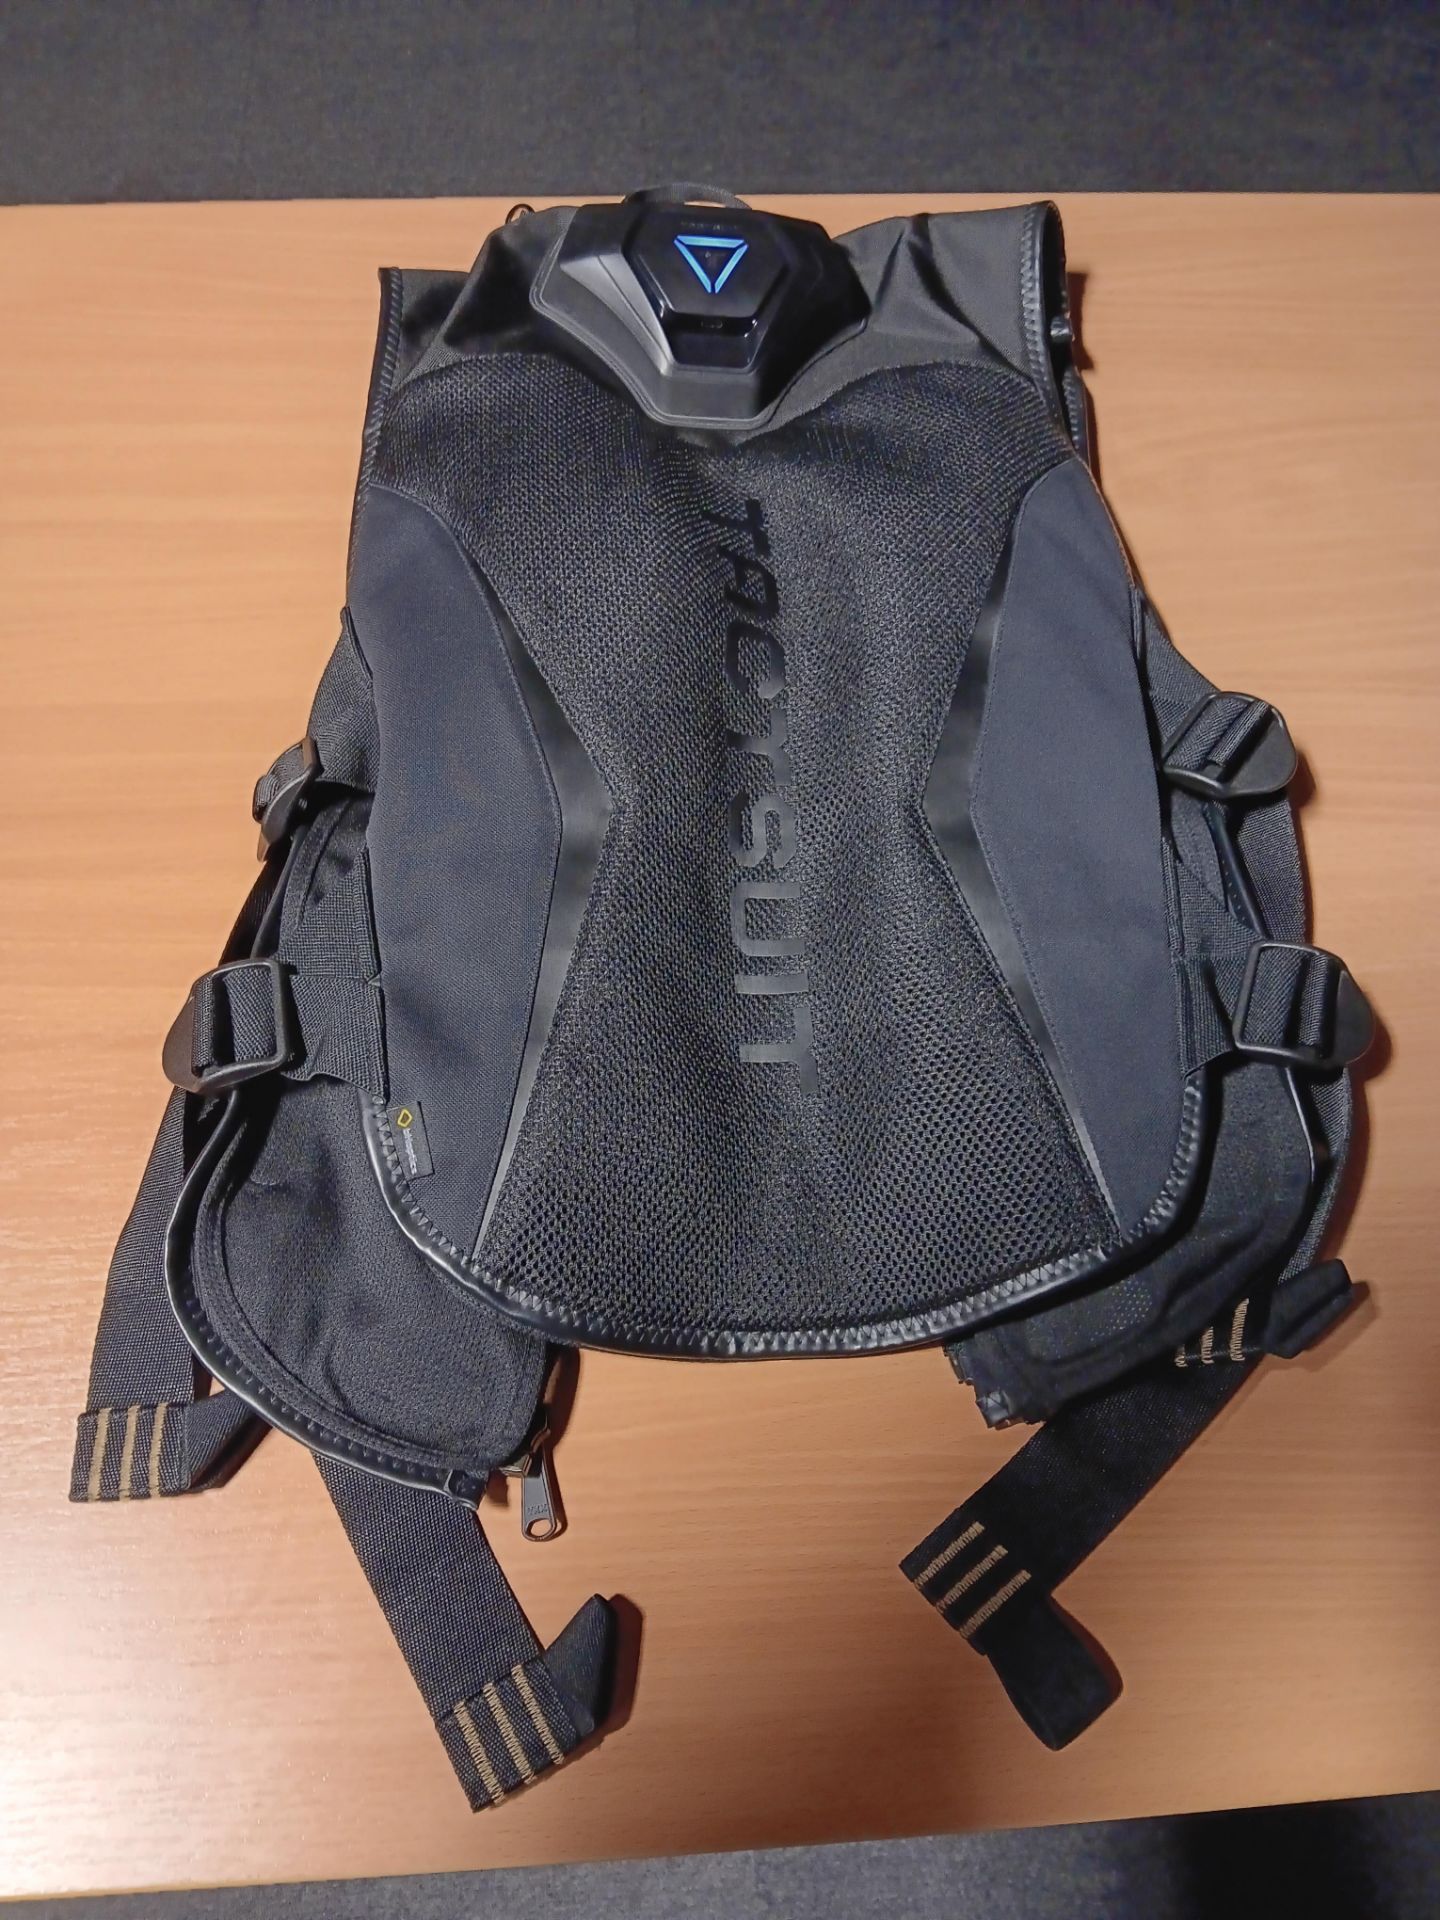 bHaptics TactSuit X40 Haptic Vest – Cost New £550